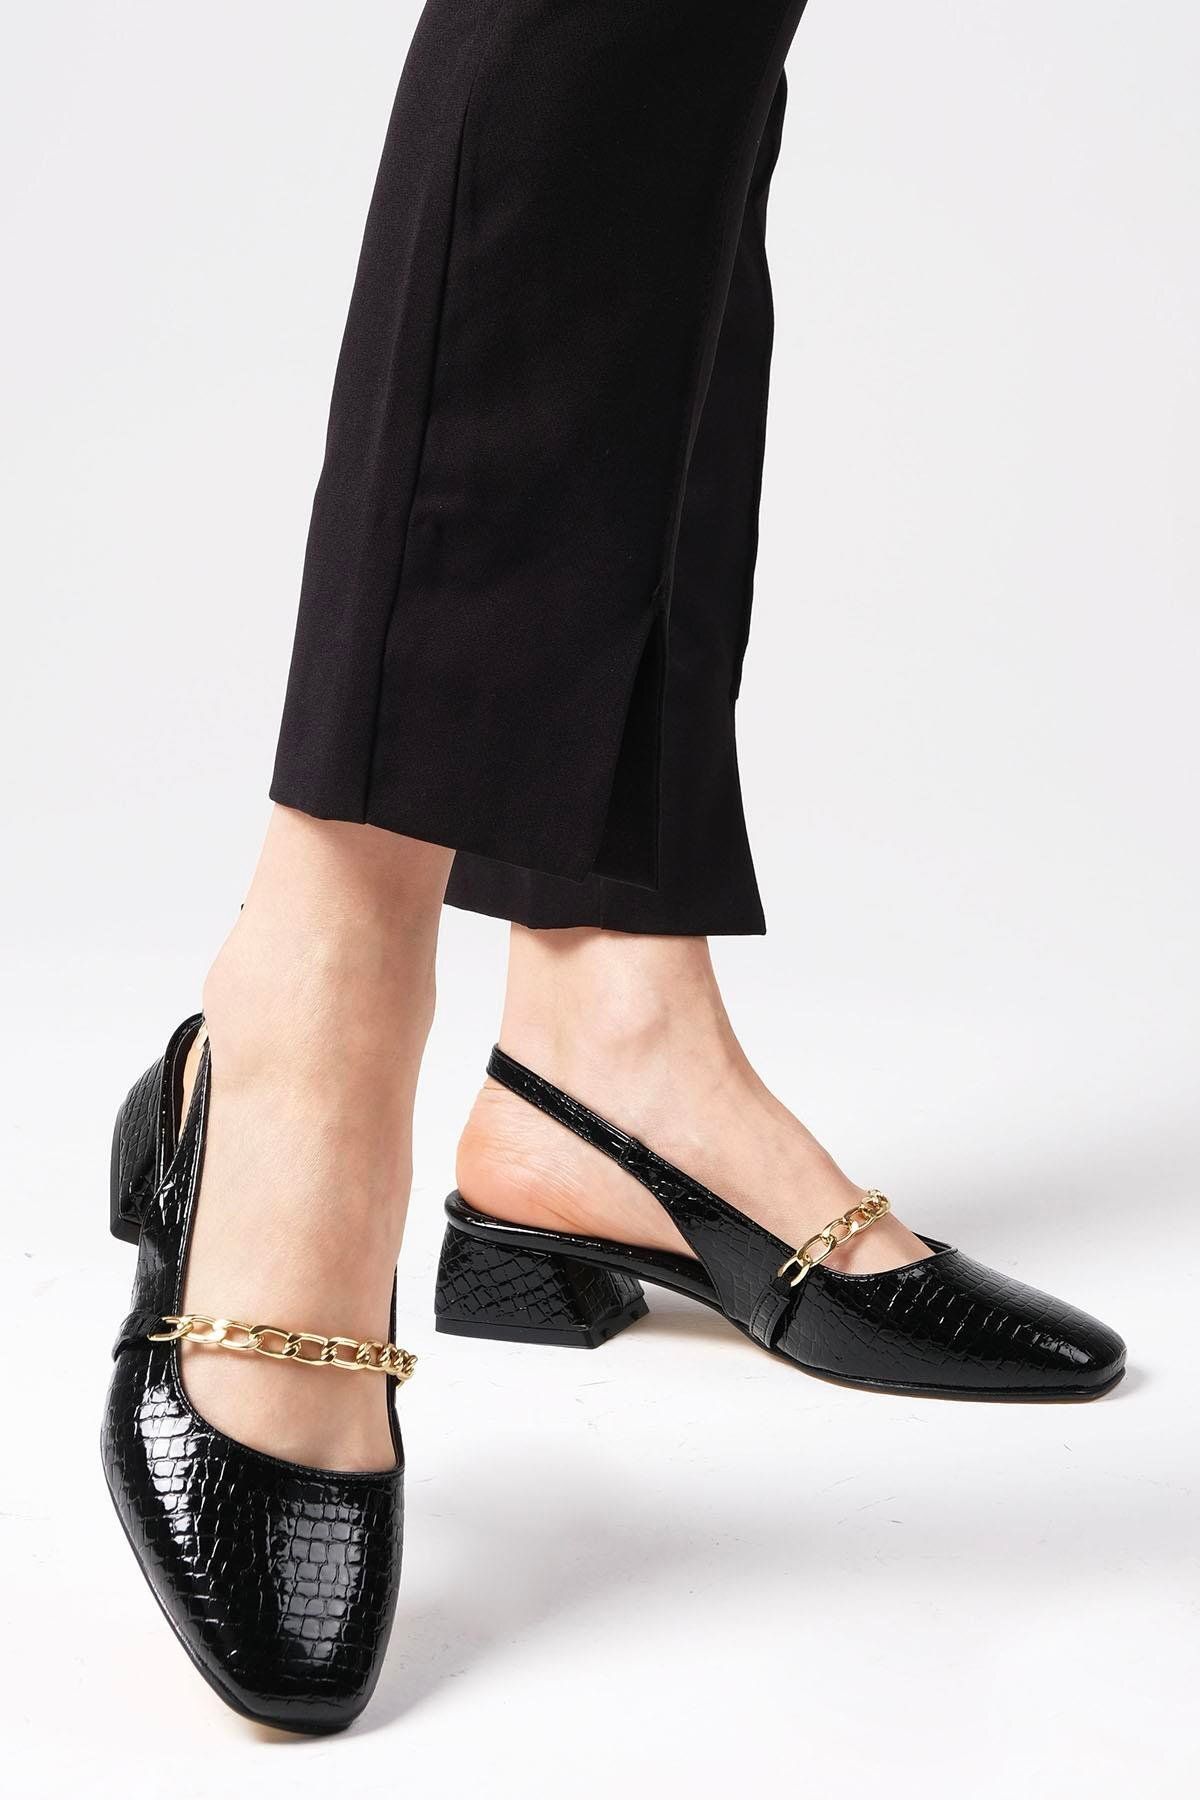 Mio Gusto Renata Siyah Renk Arkası Açık Kısa Topuklu Kadın Ayakkabı